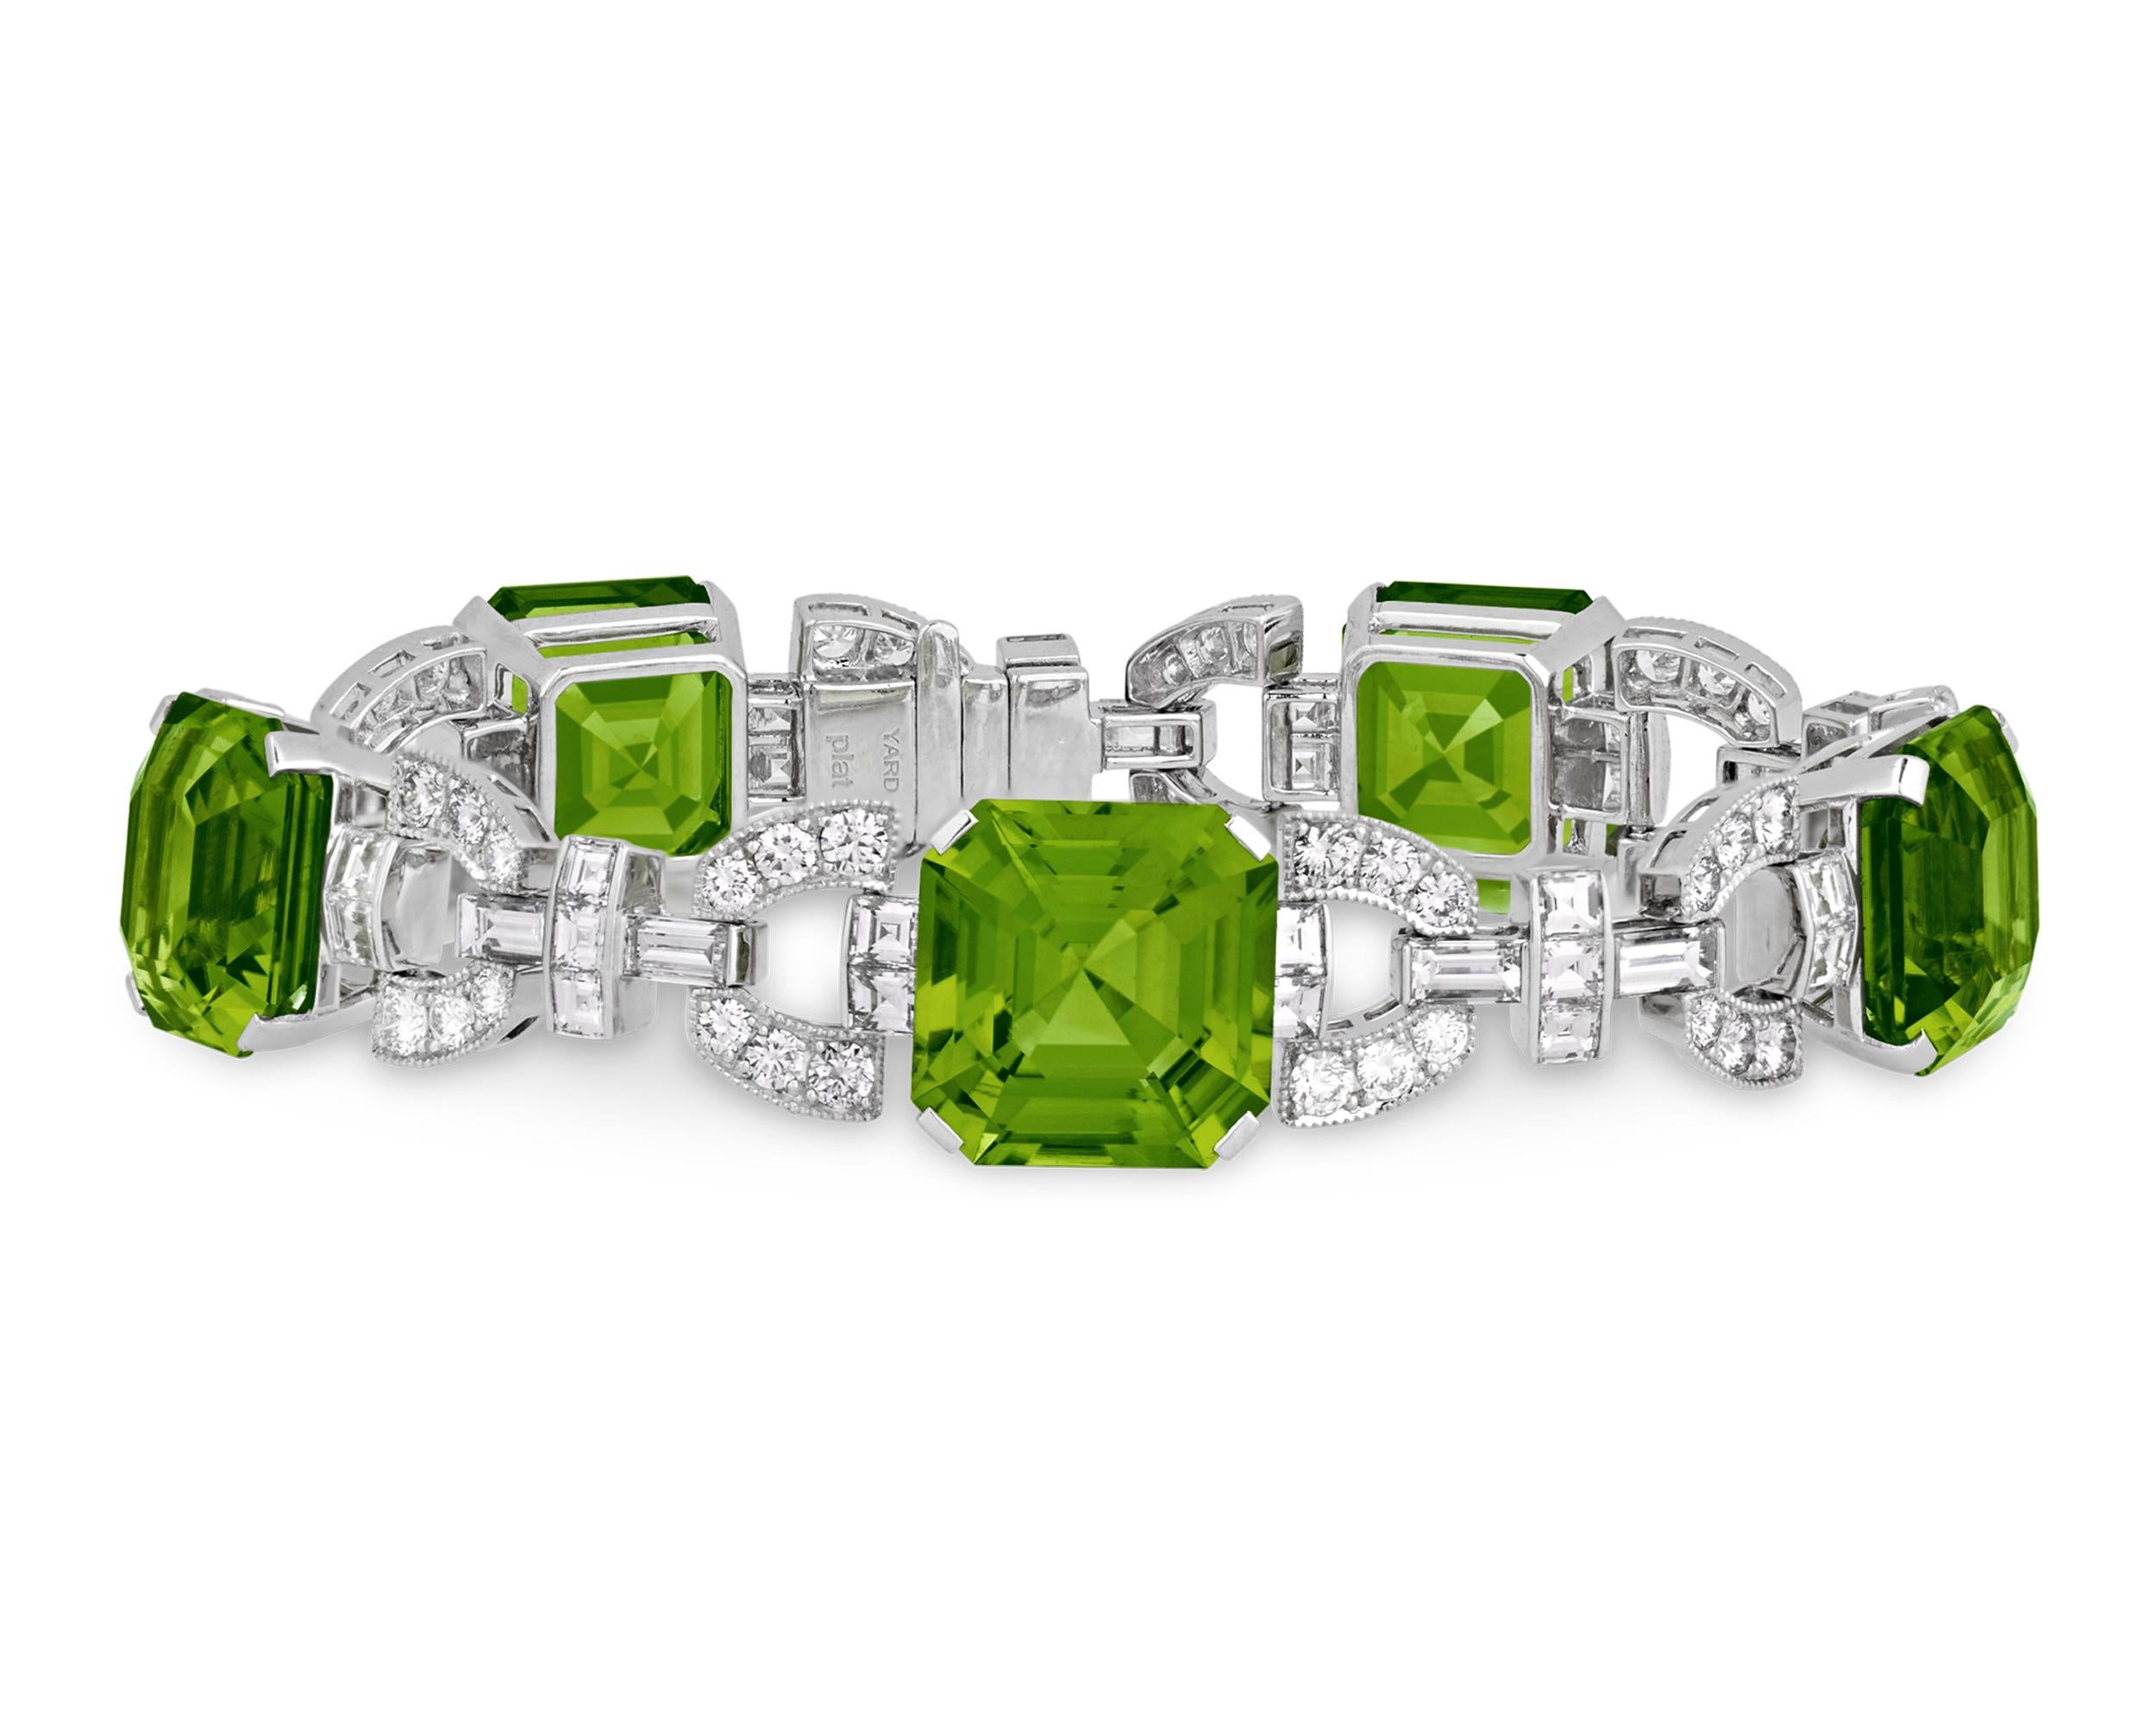 Ce magnifique bracelet du célèbre joaillier Raymond Jewell est orné de cinq superbes péridots taillés en émeraude totalisant un impressionnant 46,40 carats. Les pierres précieuses rayonnantes affichent leur teinte verte vibrante caractéristique avec